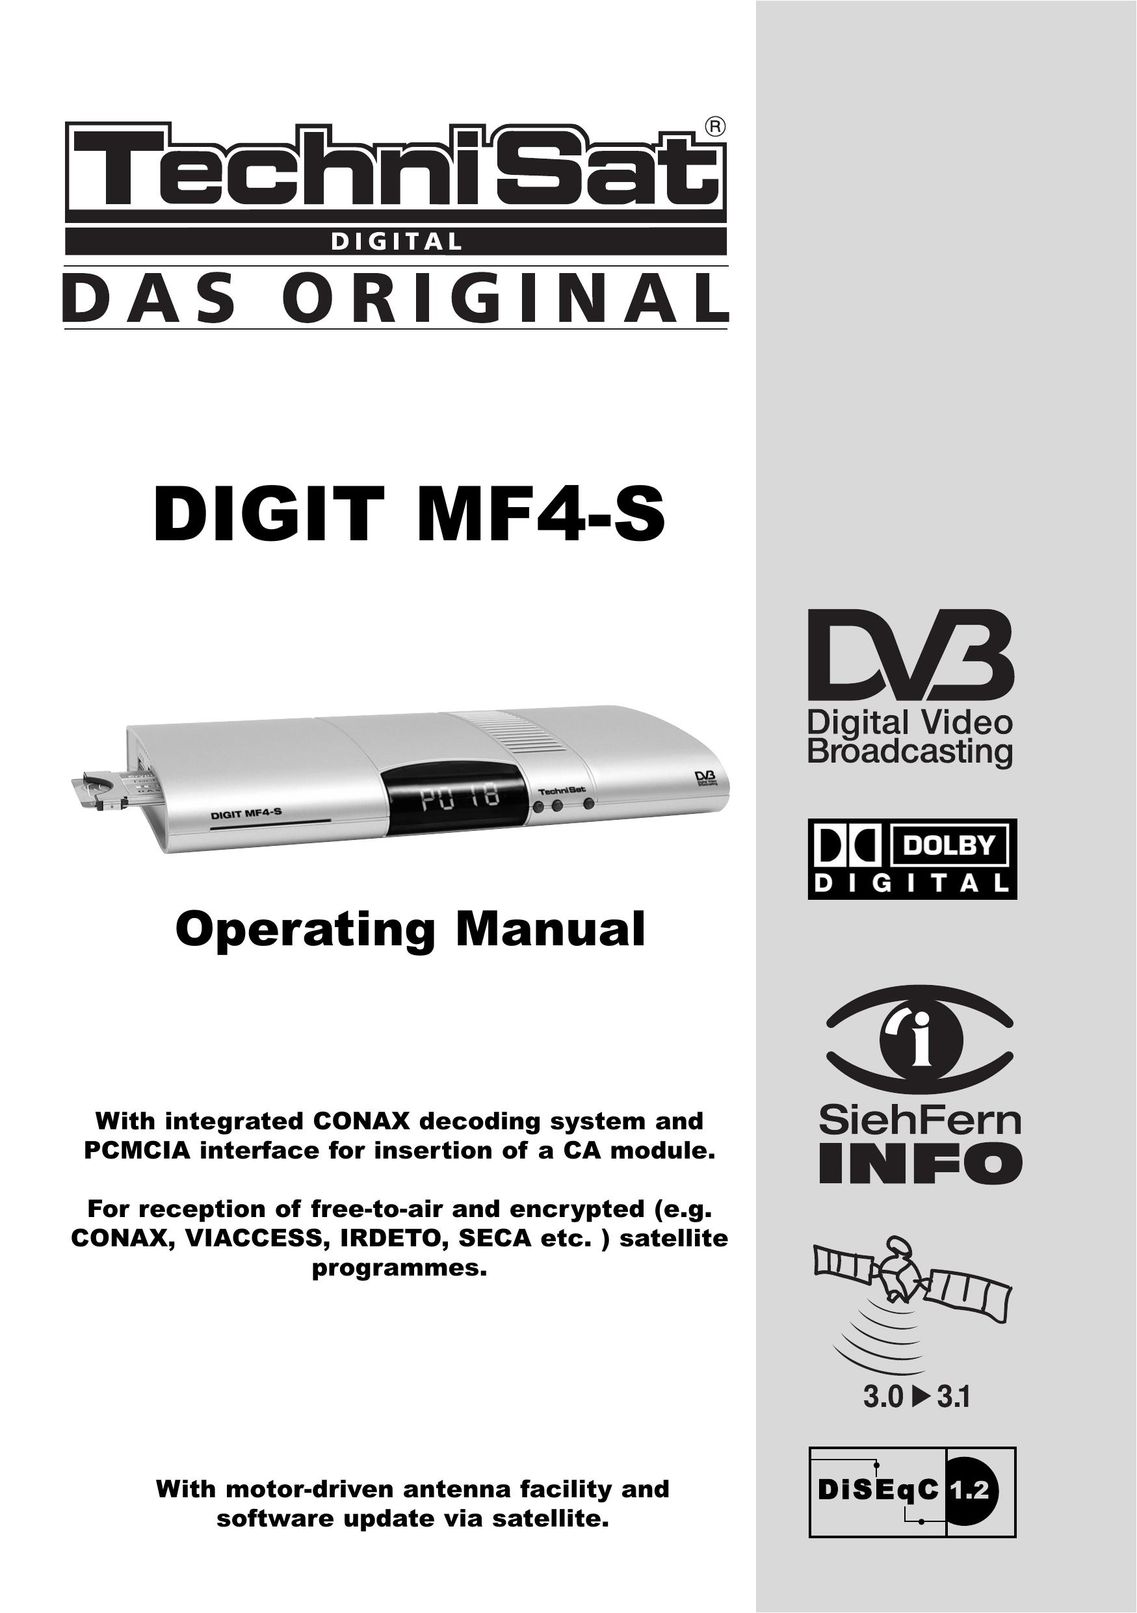 TechniSat DIGIT MF4-S Satellite TV System User Manual